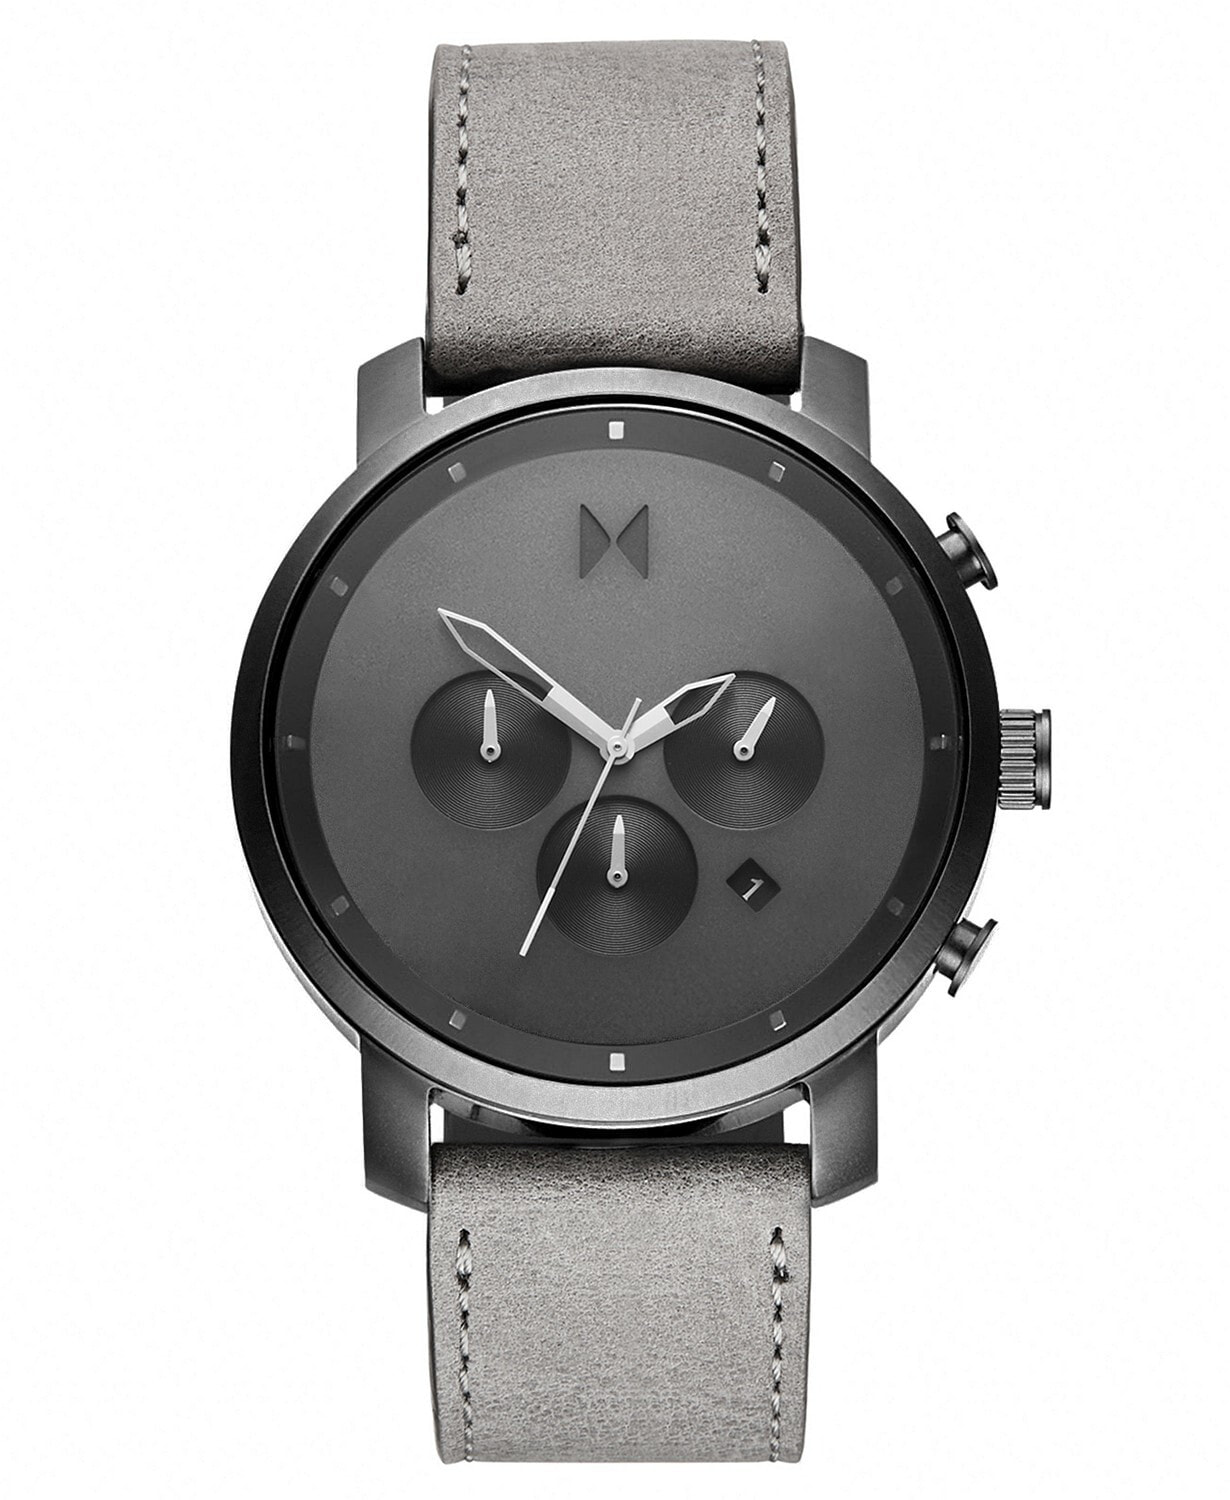 Мужские наручные часы с серым кожаным ремешком MVMT Chronograph Chrono Monochrome Gray Leather Strap Watch 45mm